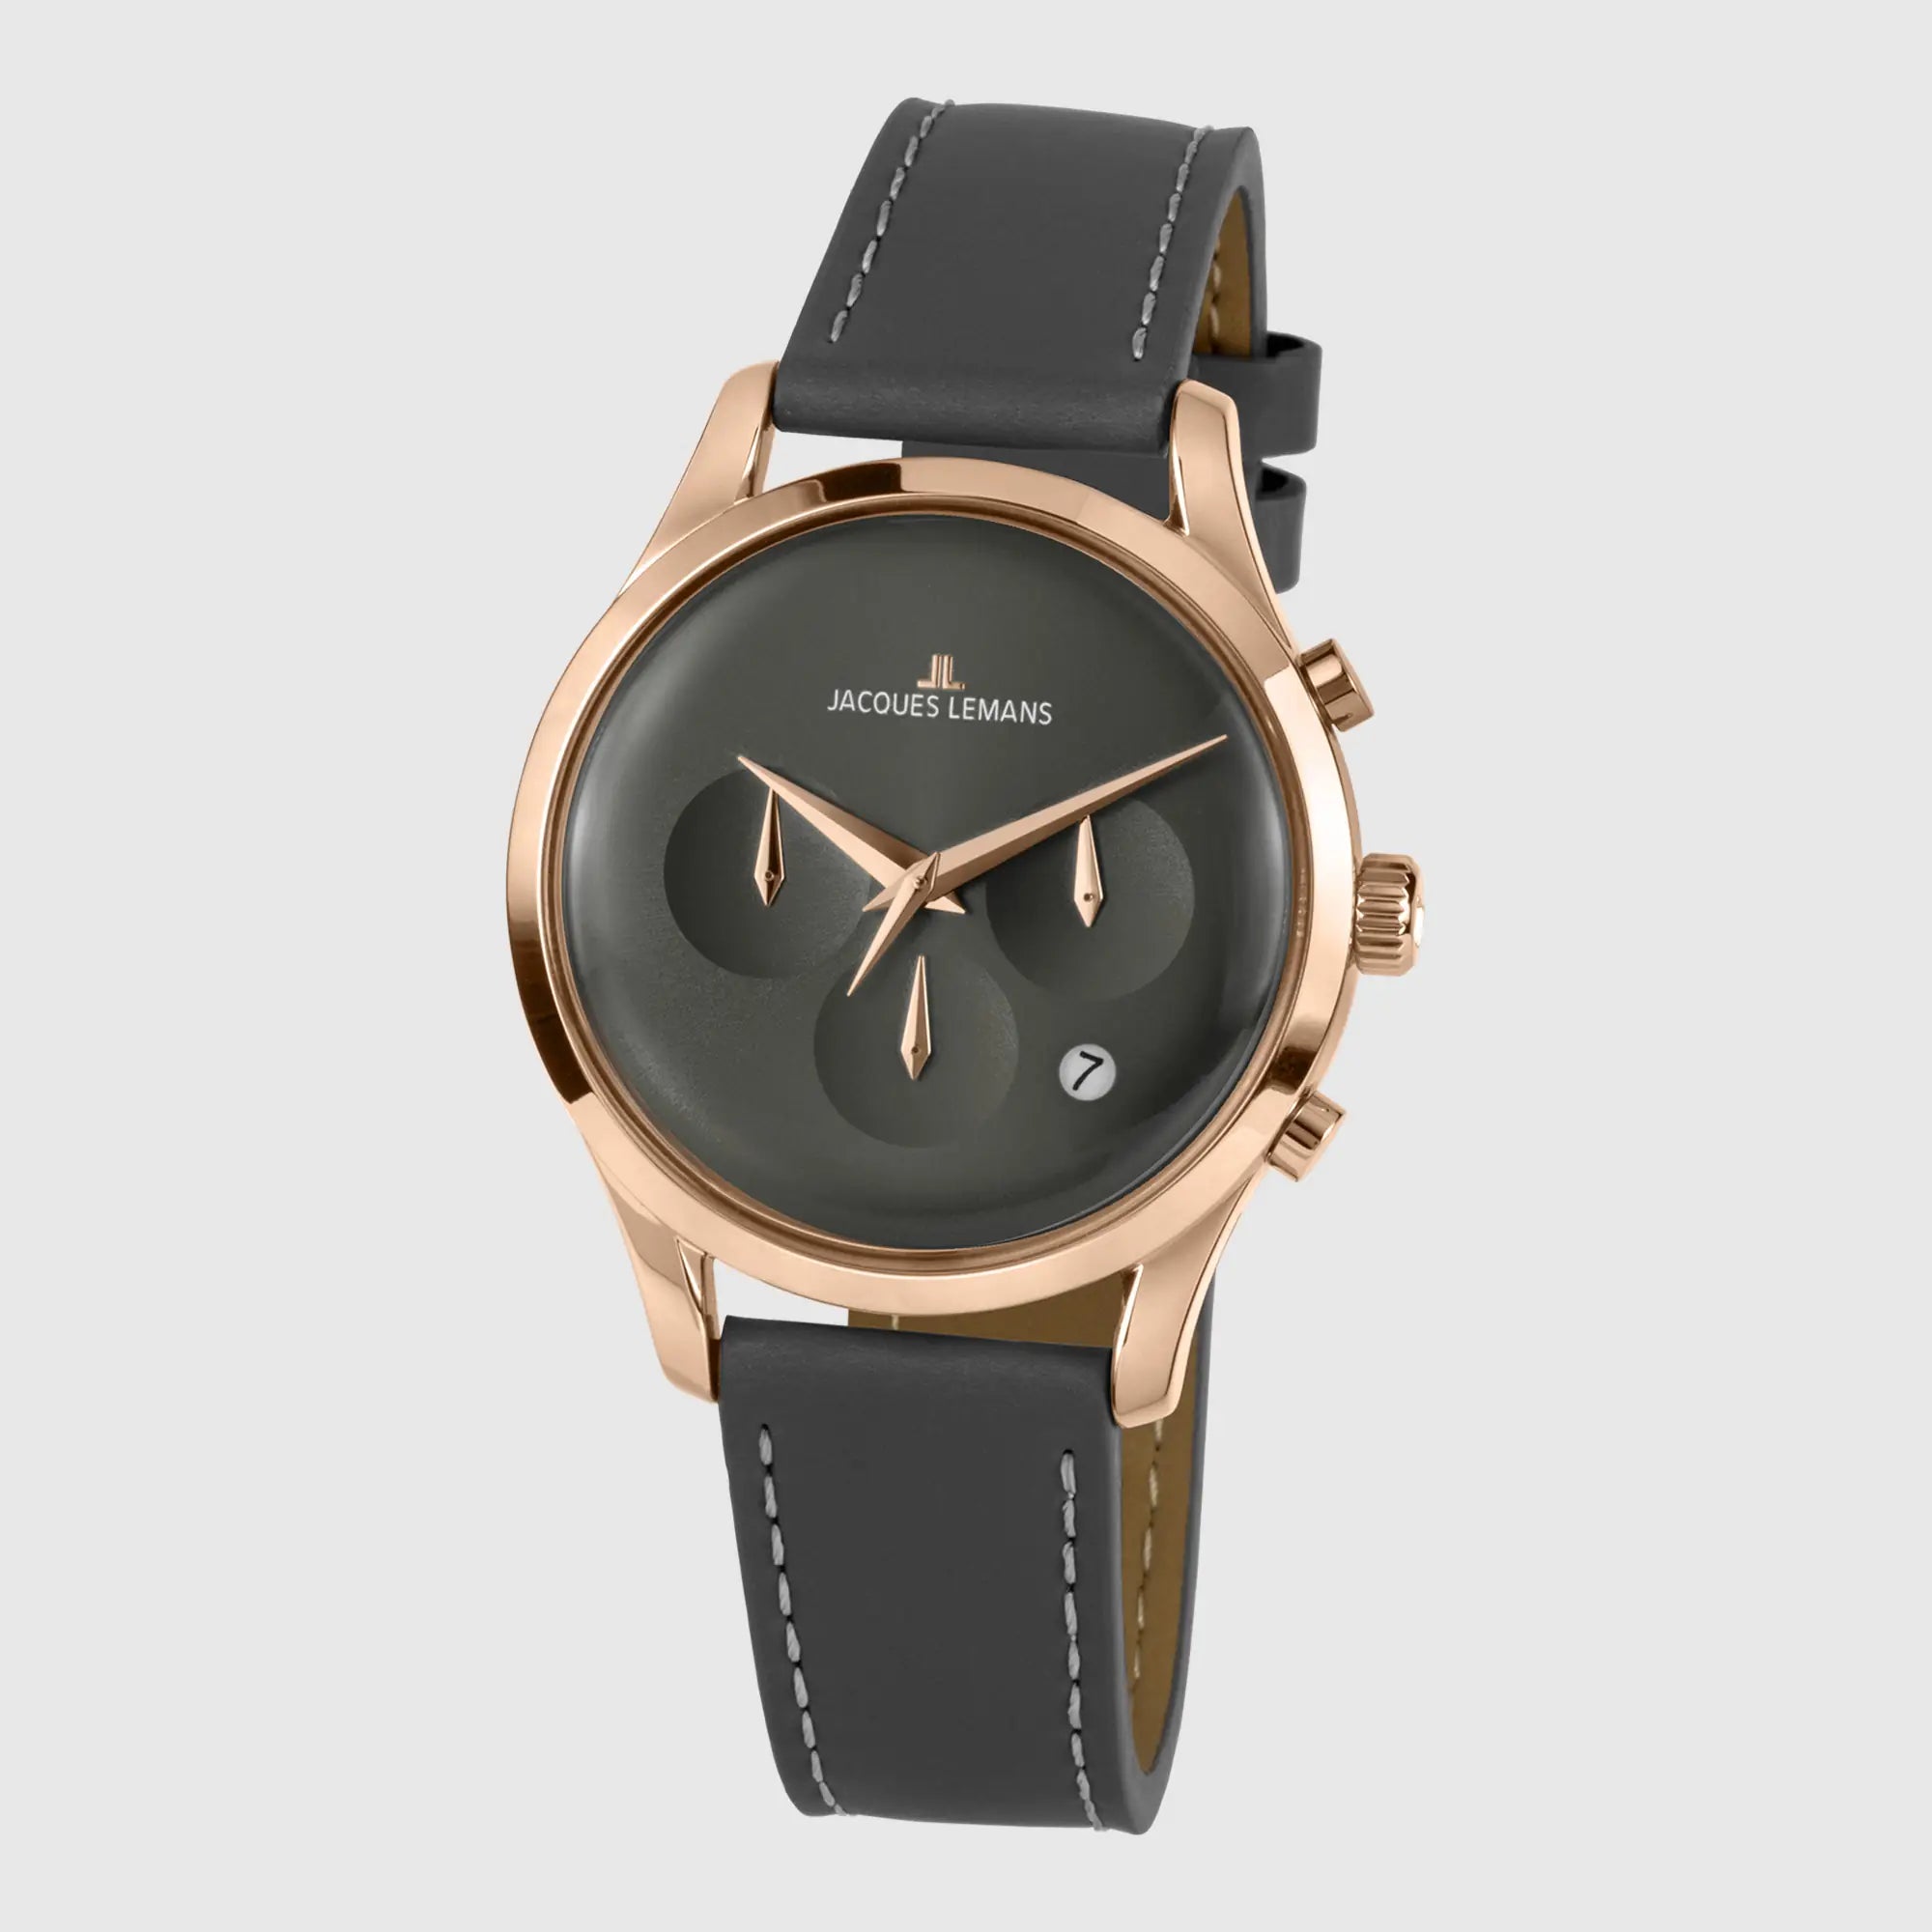 Leicht seitliche Ansicht der Jacques Lemans Uhr "Retro Classic Chronograph" in einem Roségold-farbenem Gehäuse und anthraziten Zifferblatt und Lederband